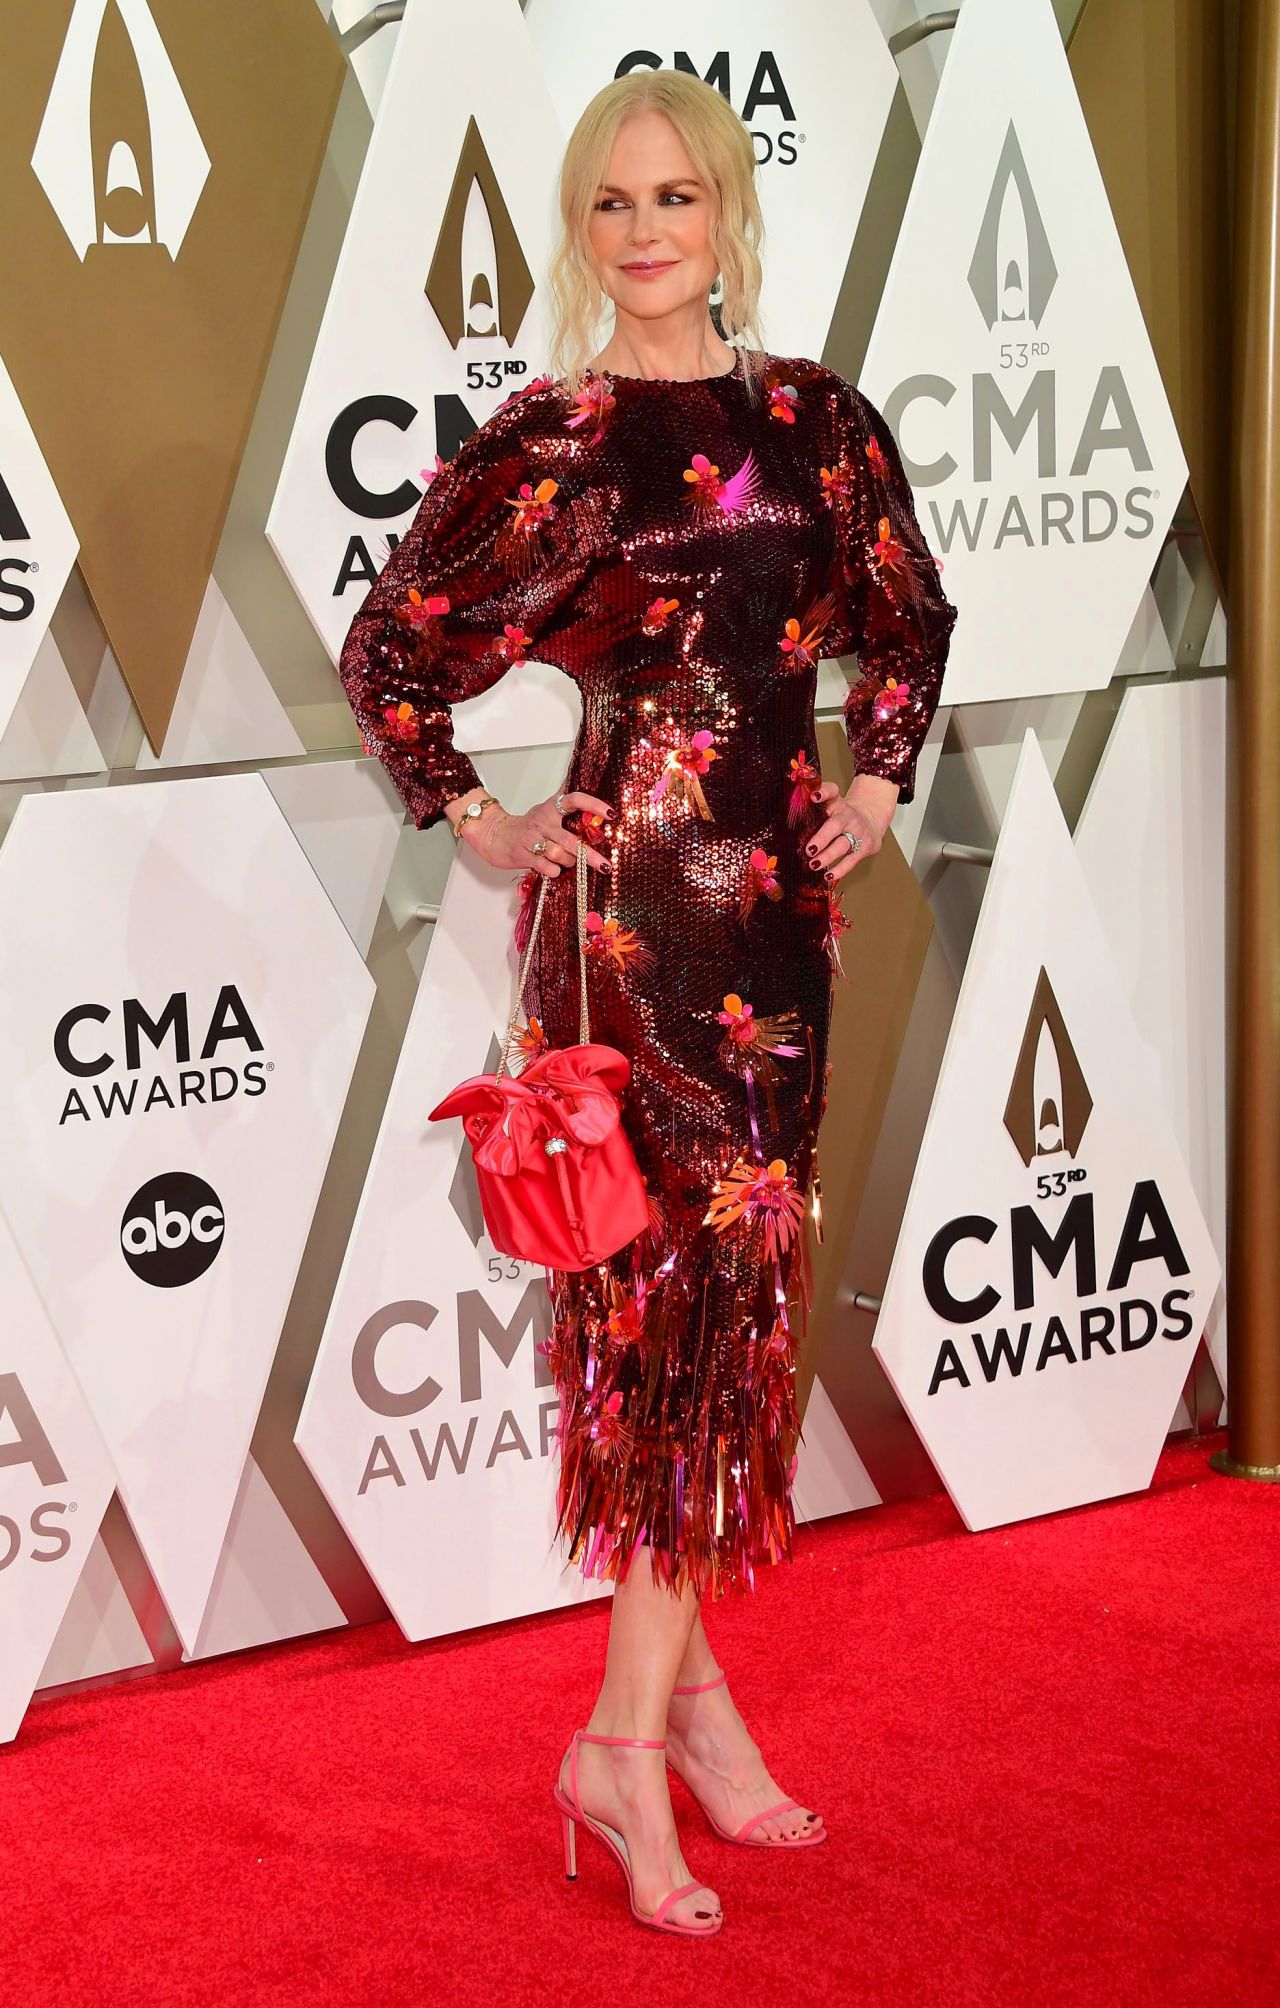 Tall Australian cougar Nicole Kidman at CMA Awards 2019 in Nashville